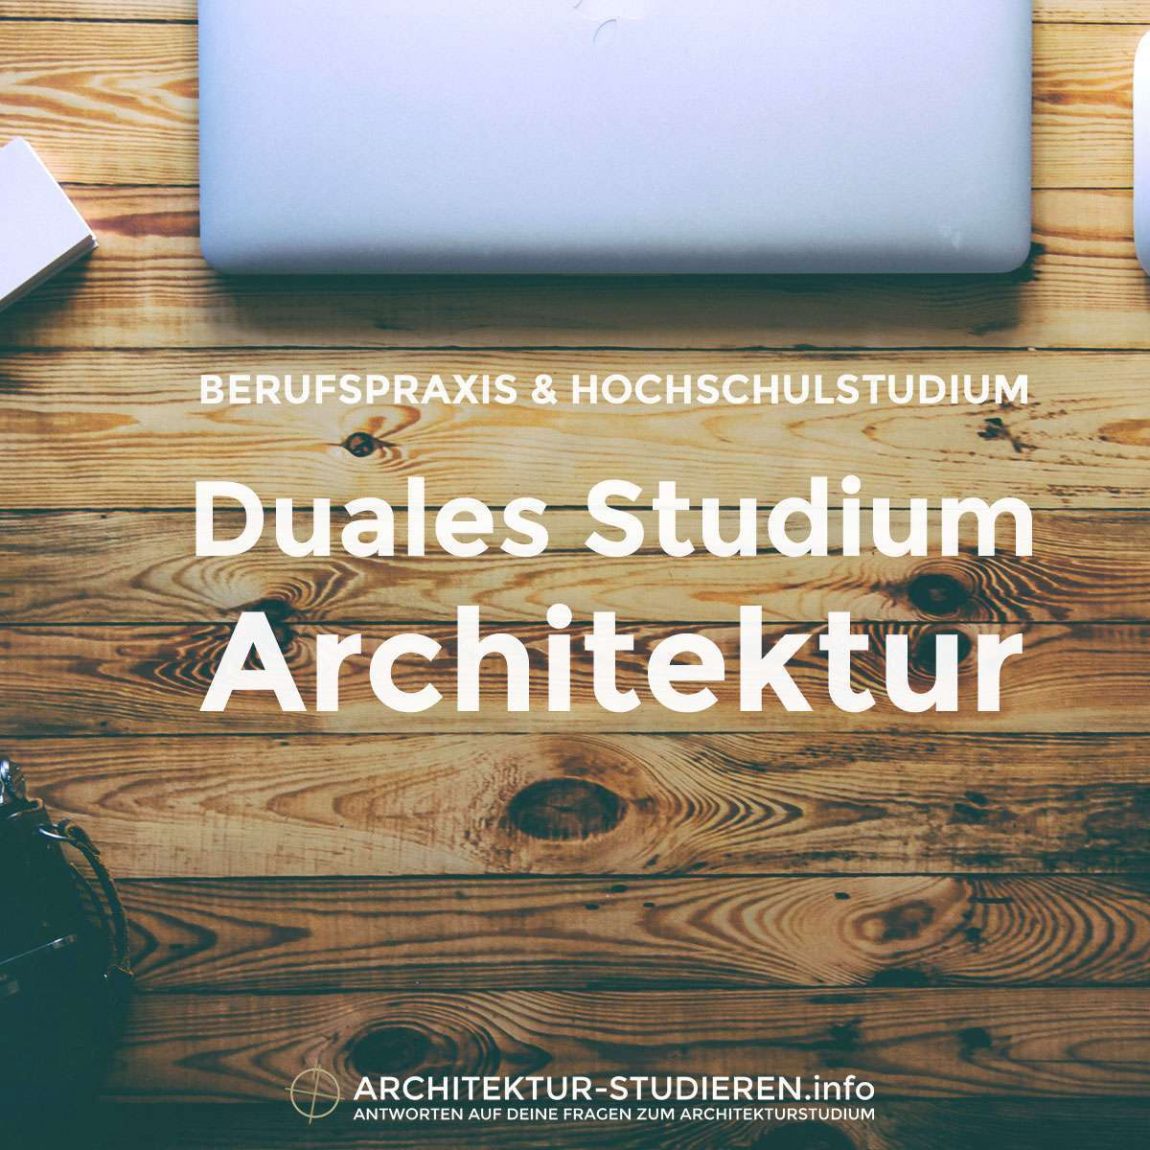 Berufspraxis & Hochschulstudium | Duales Studium Architektur | © architektur-studieren.info